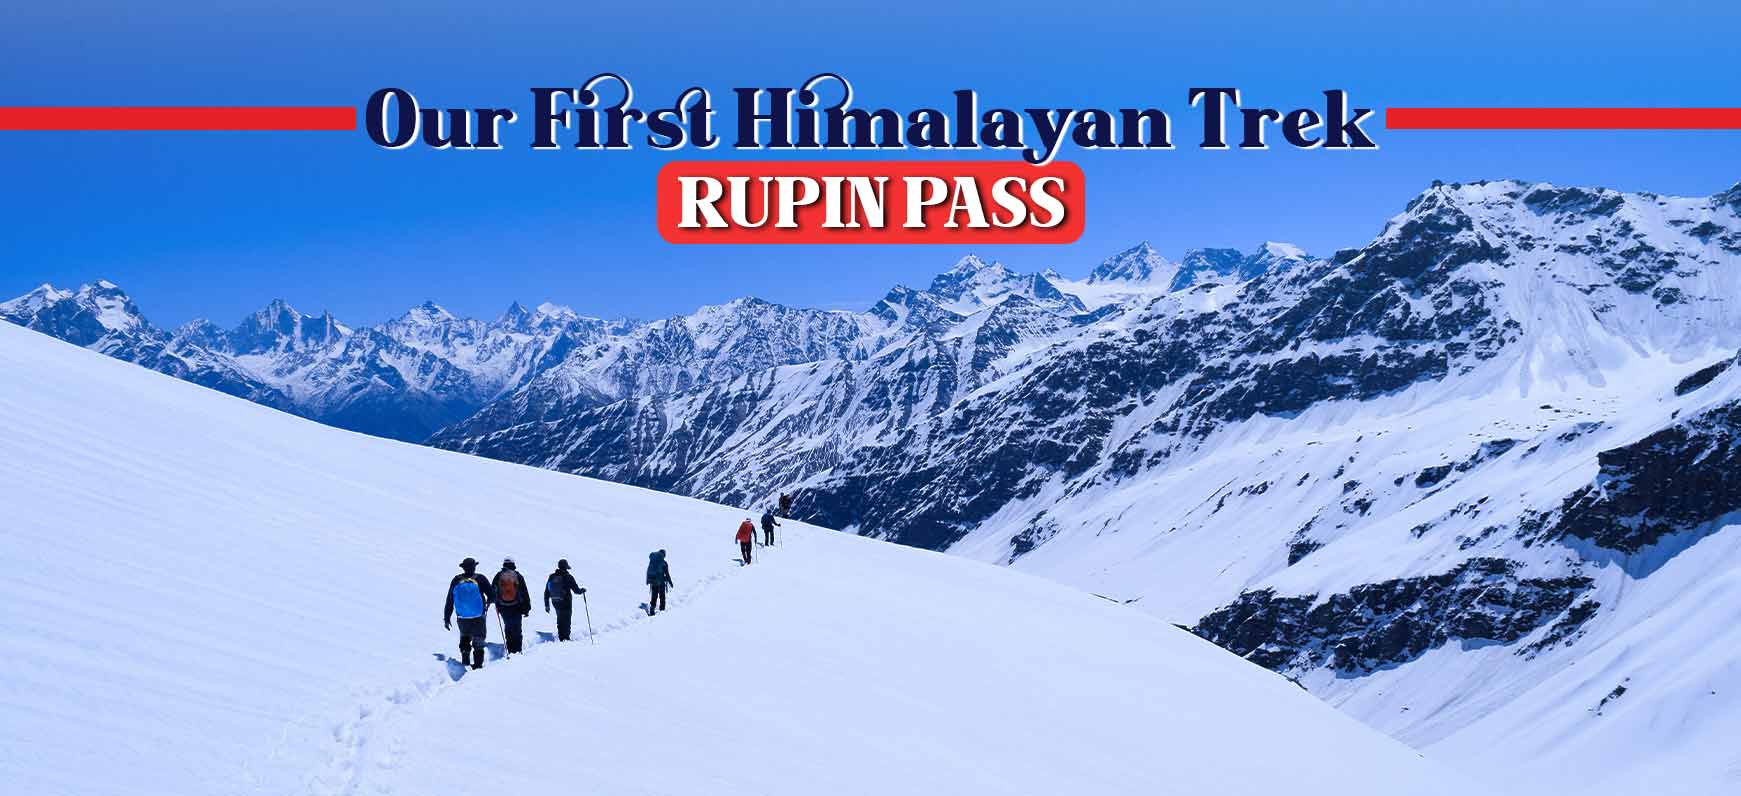 Our First Himalayan Trek - RUPIN PASS Trek